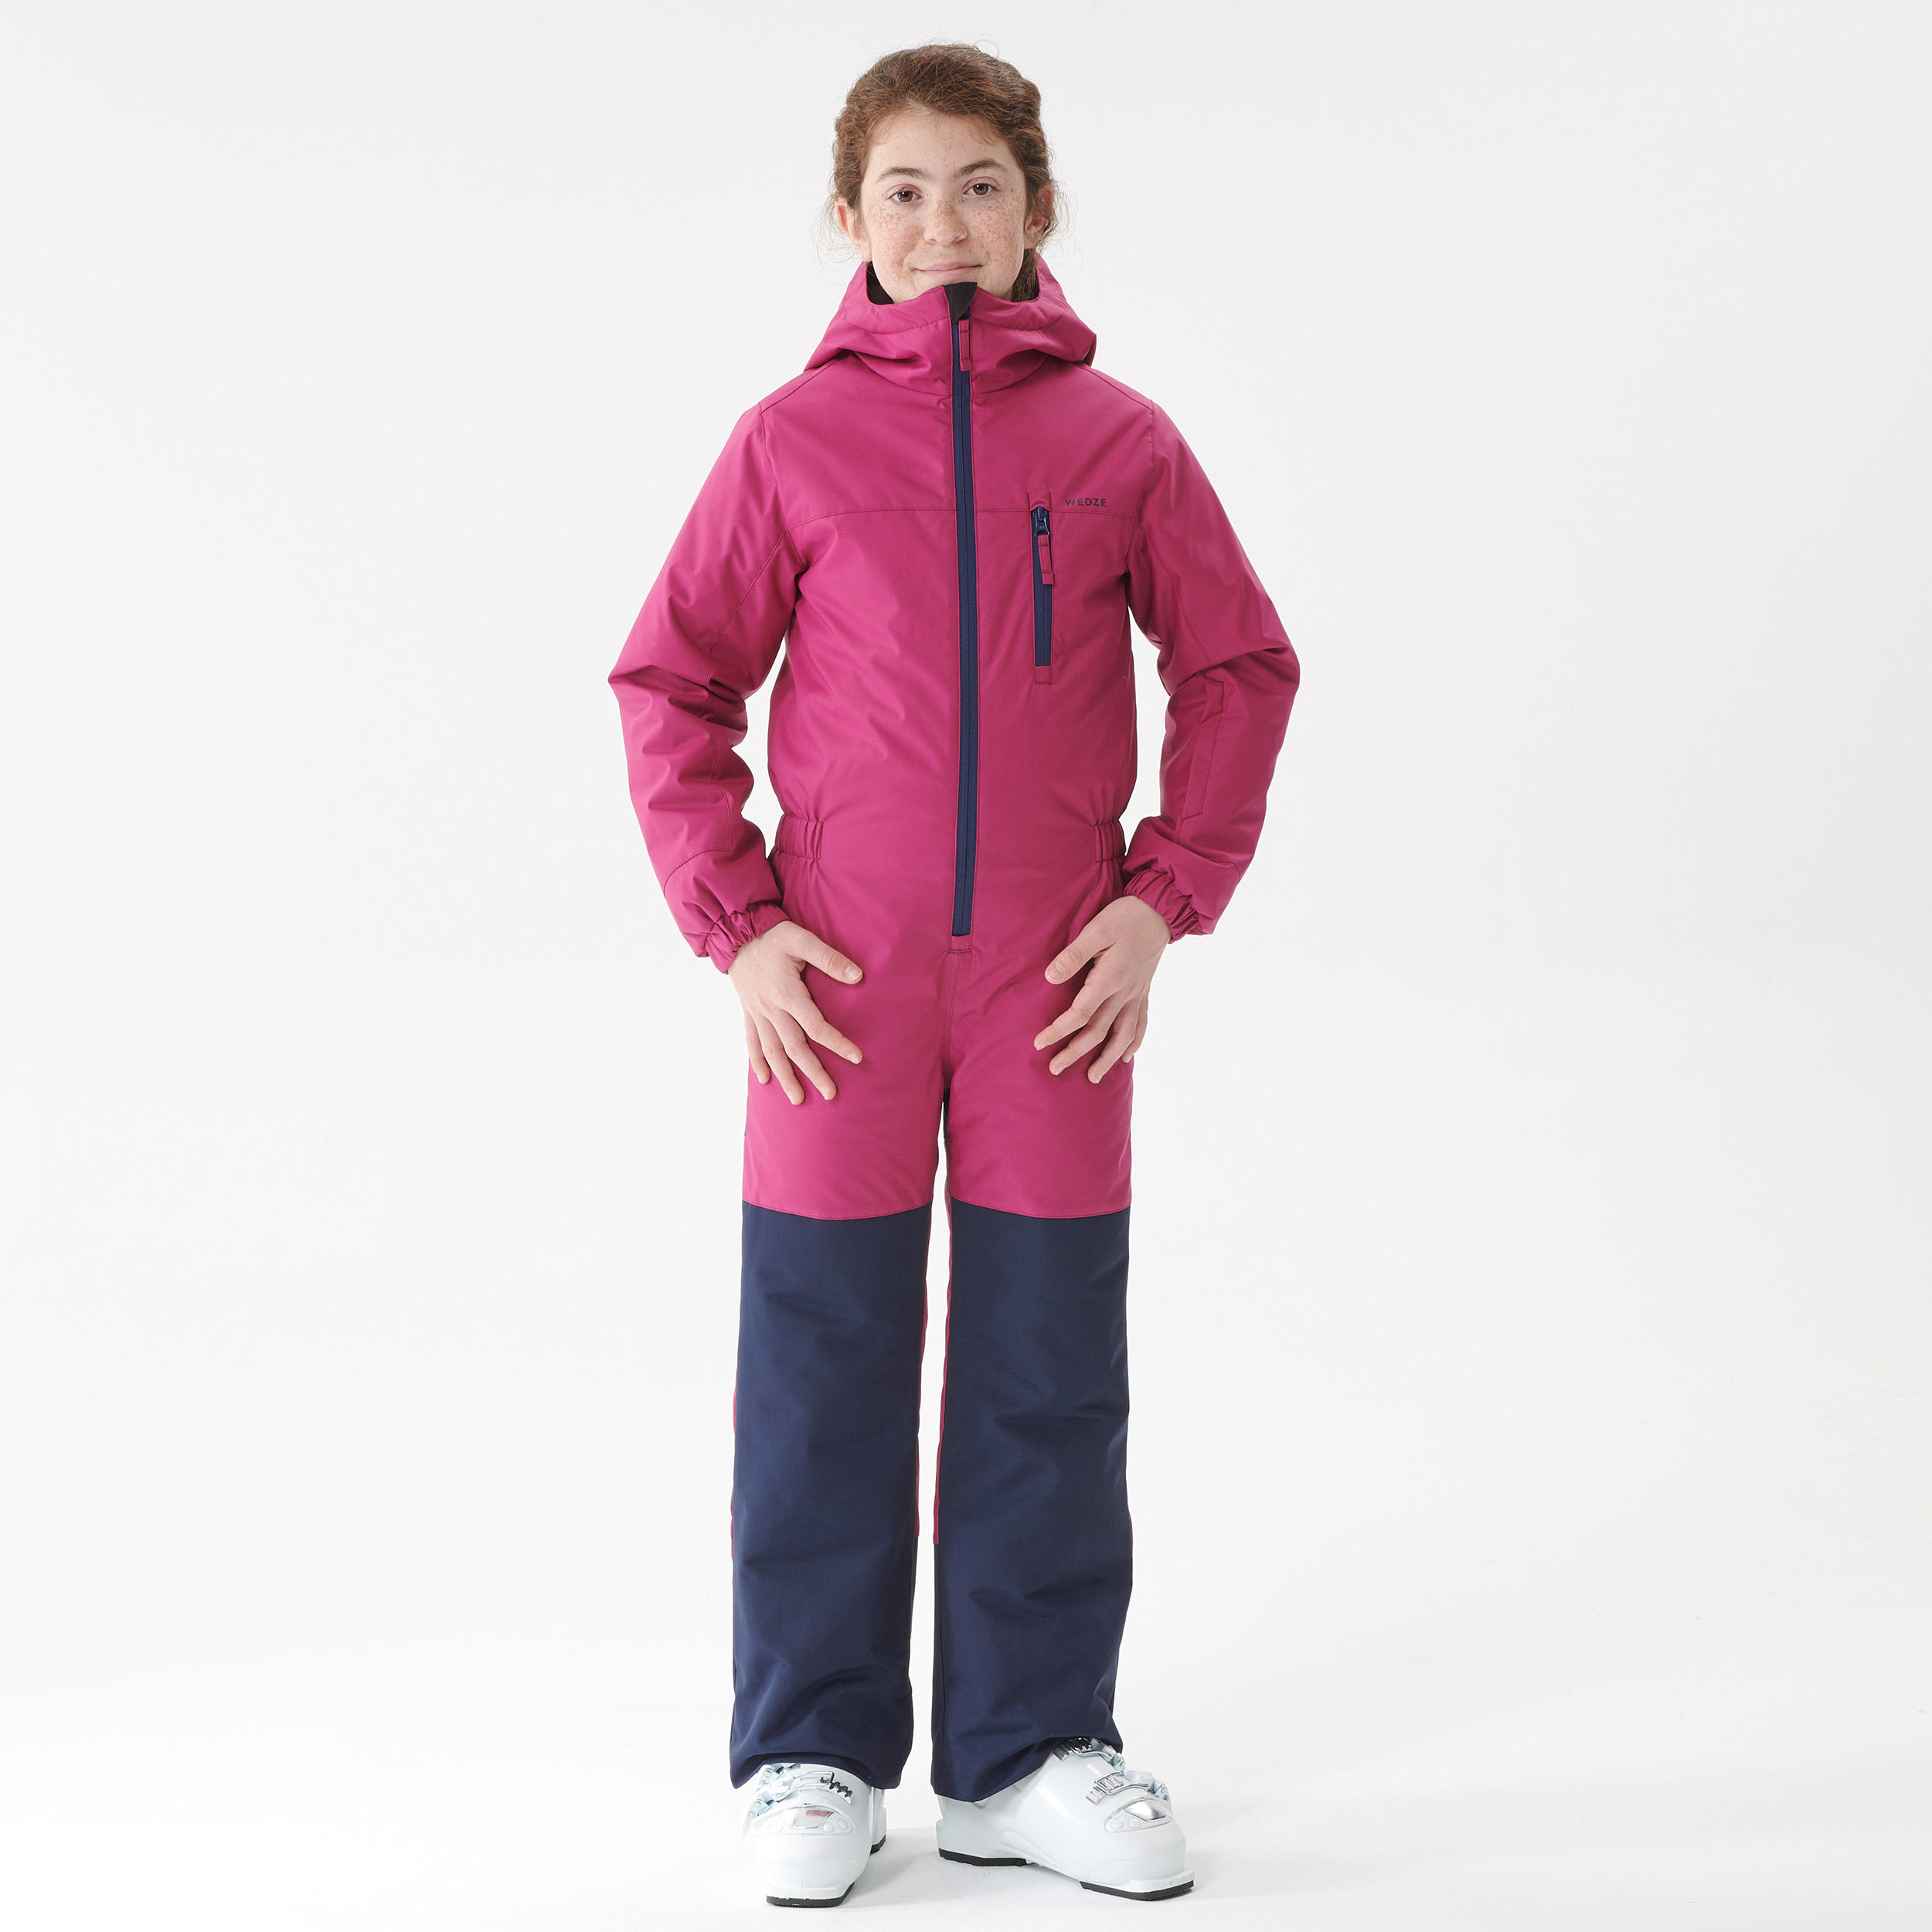 Kids' Snowsuit - 100 Pink/Navy Blue - Dark mulberry, Navy blue